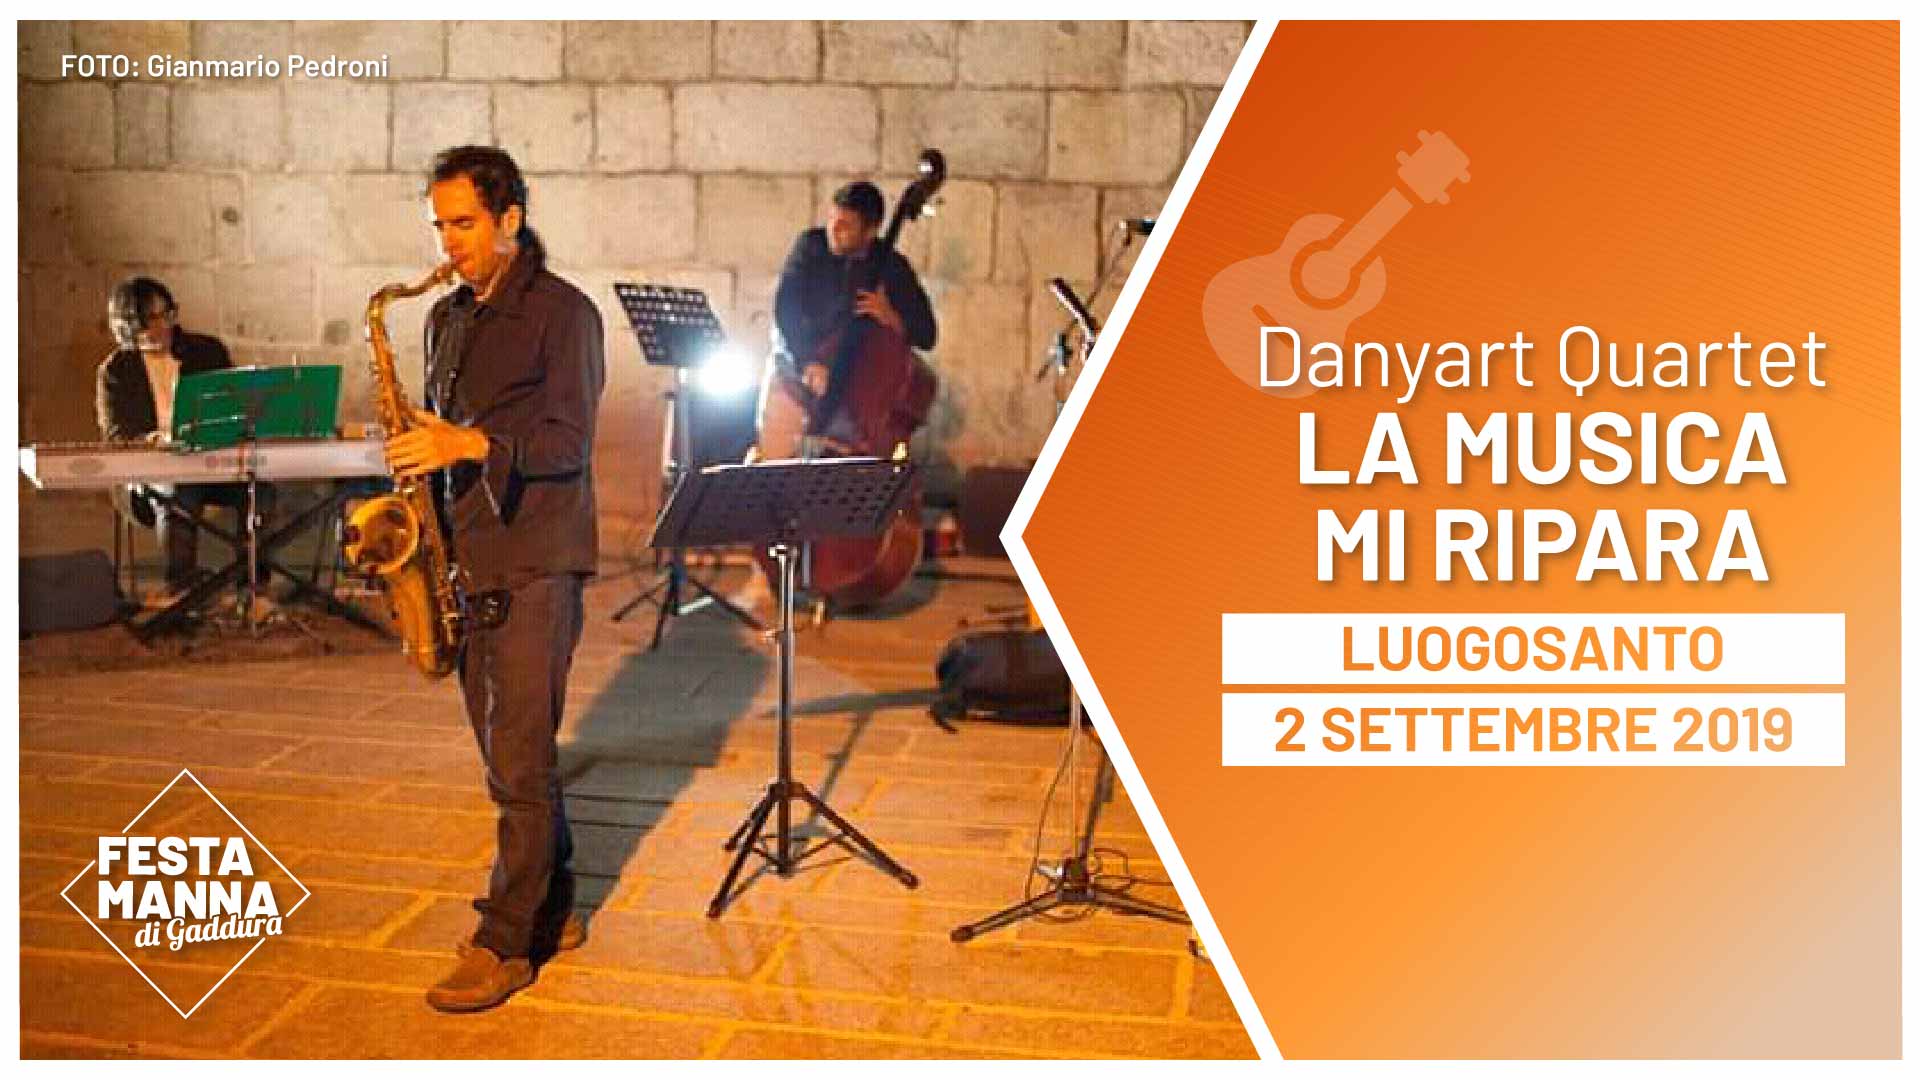 “La musica mi ripara”, concerto jazz del Danyart Quartet | Festa Manna di Gaddura 2019